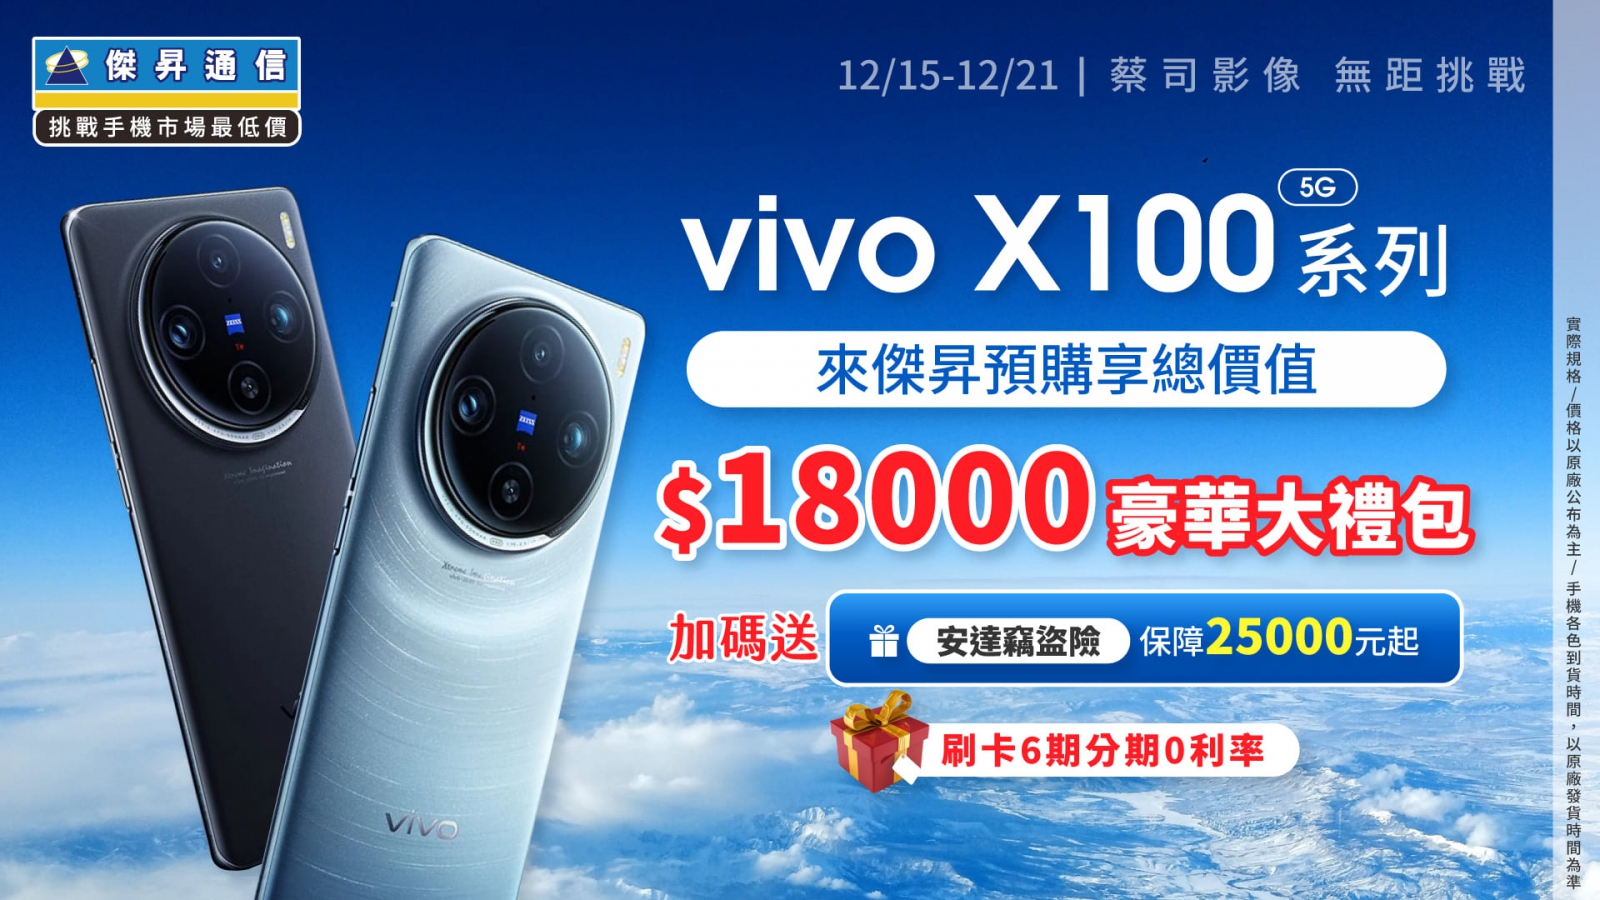 歡慶X100系列登台 加開「vivo聖誕派對」 新機預購送1.8萬豪禮